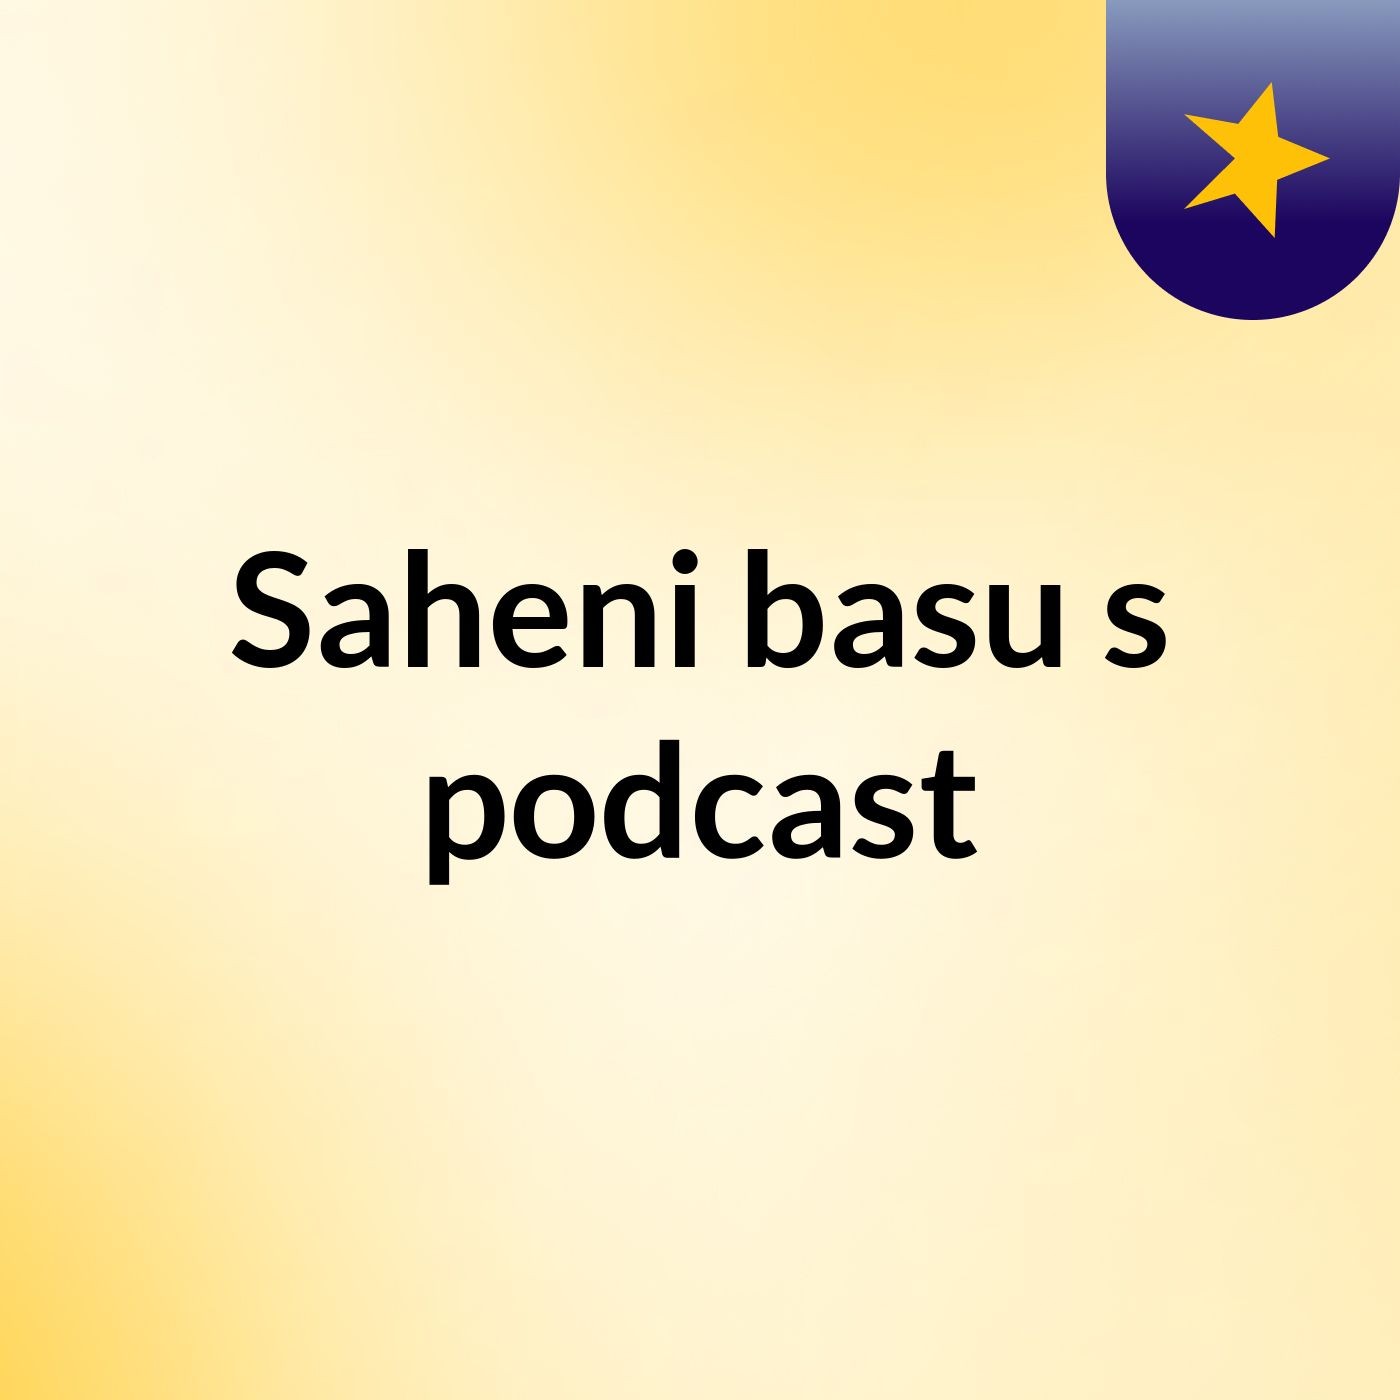 Saheni basu's podcast